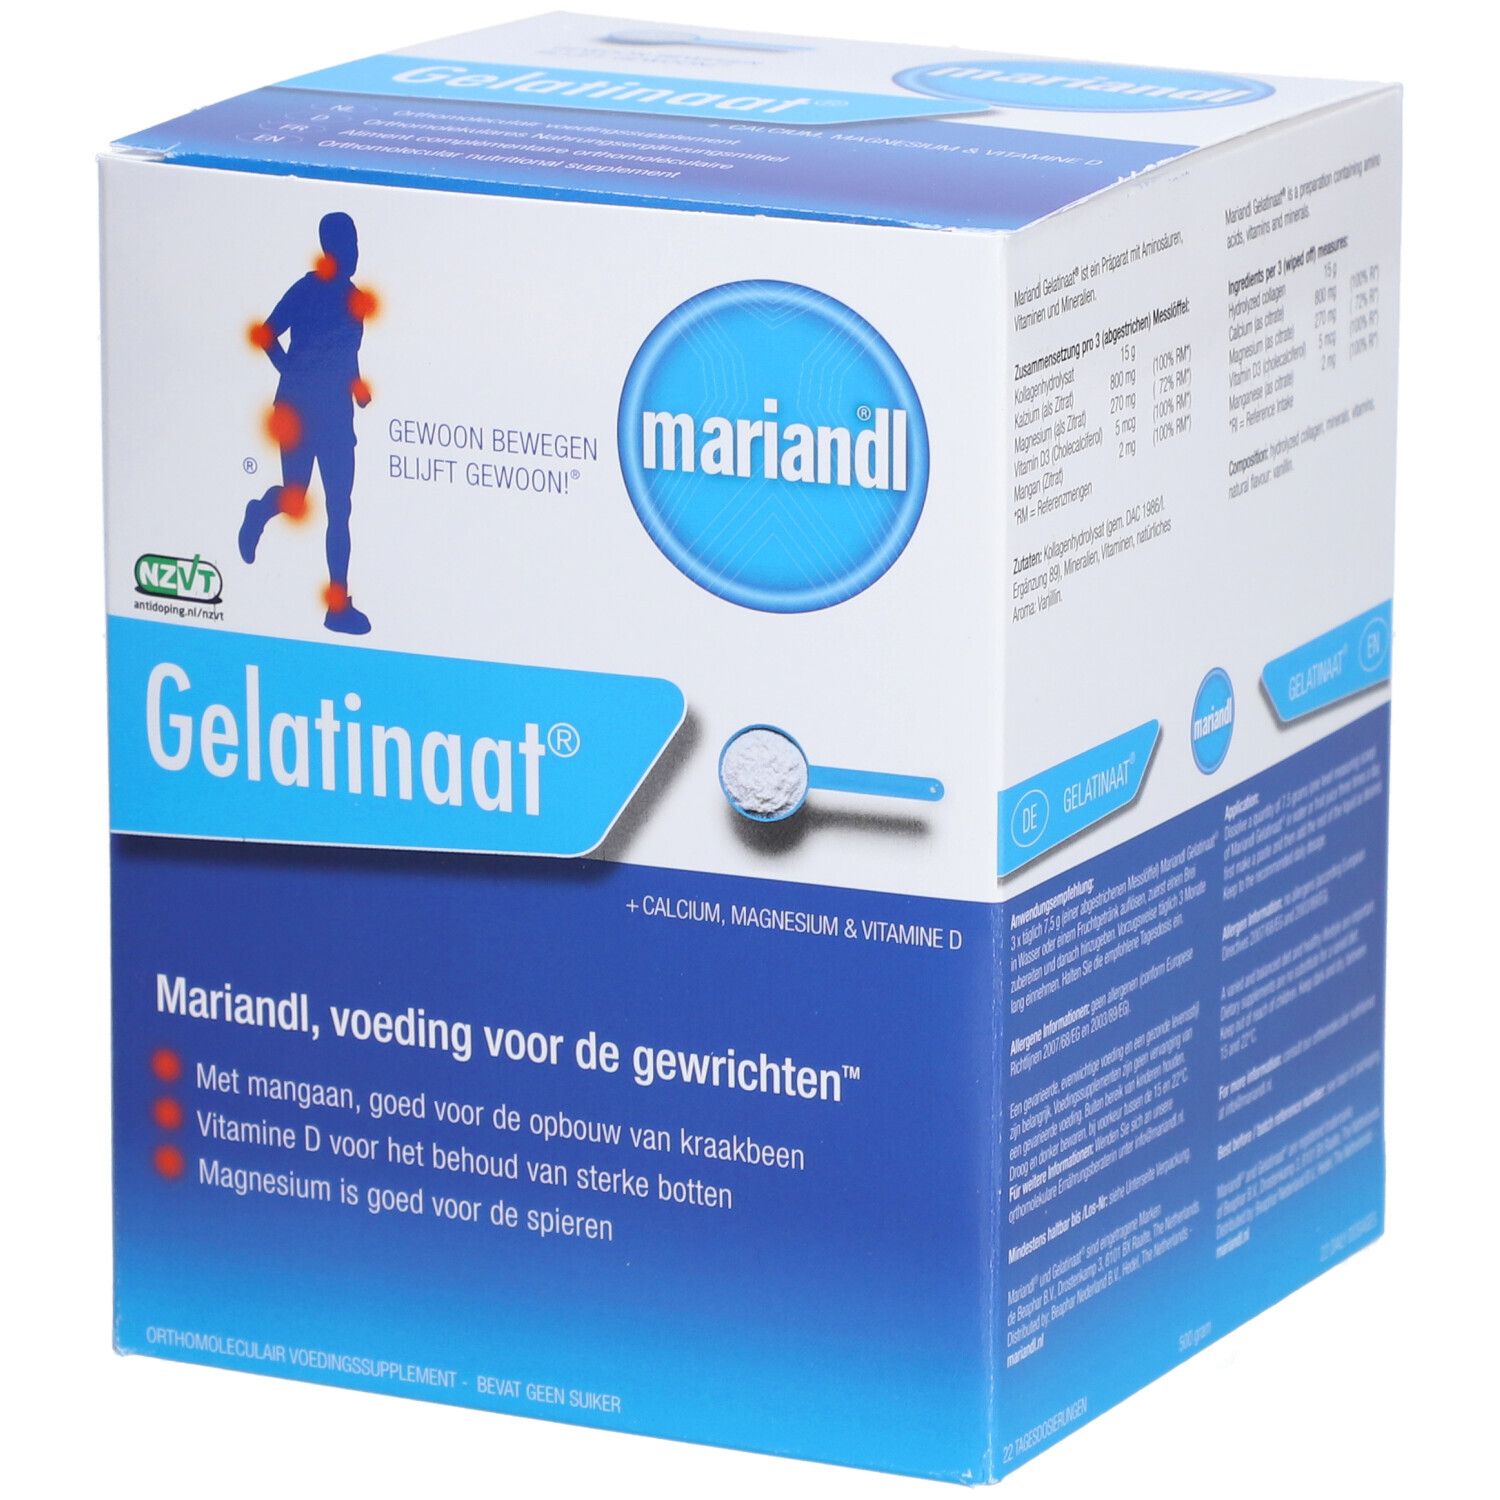 Image of mariandl® Gelatinaat® + Calcium, Magnesium & Vitamin D